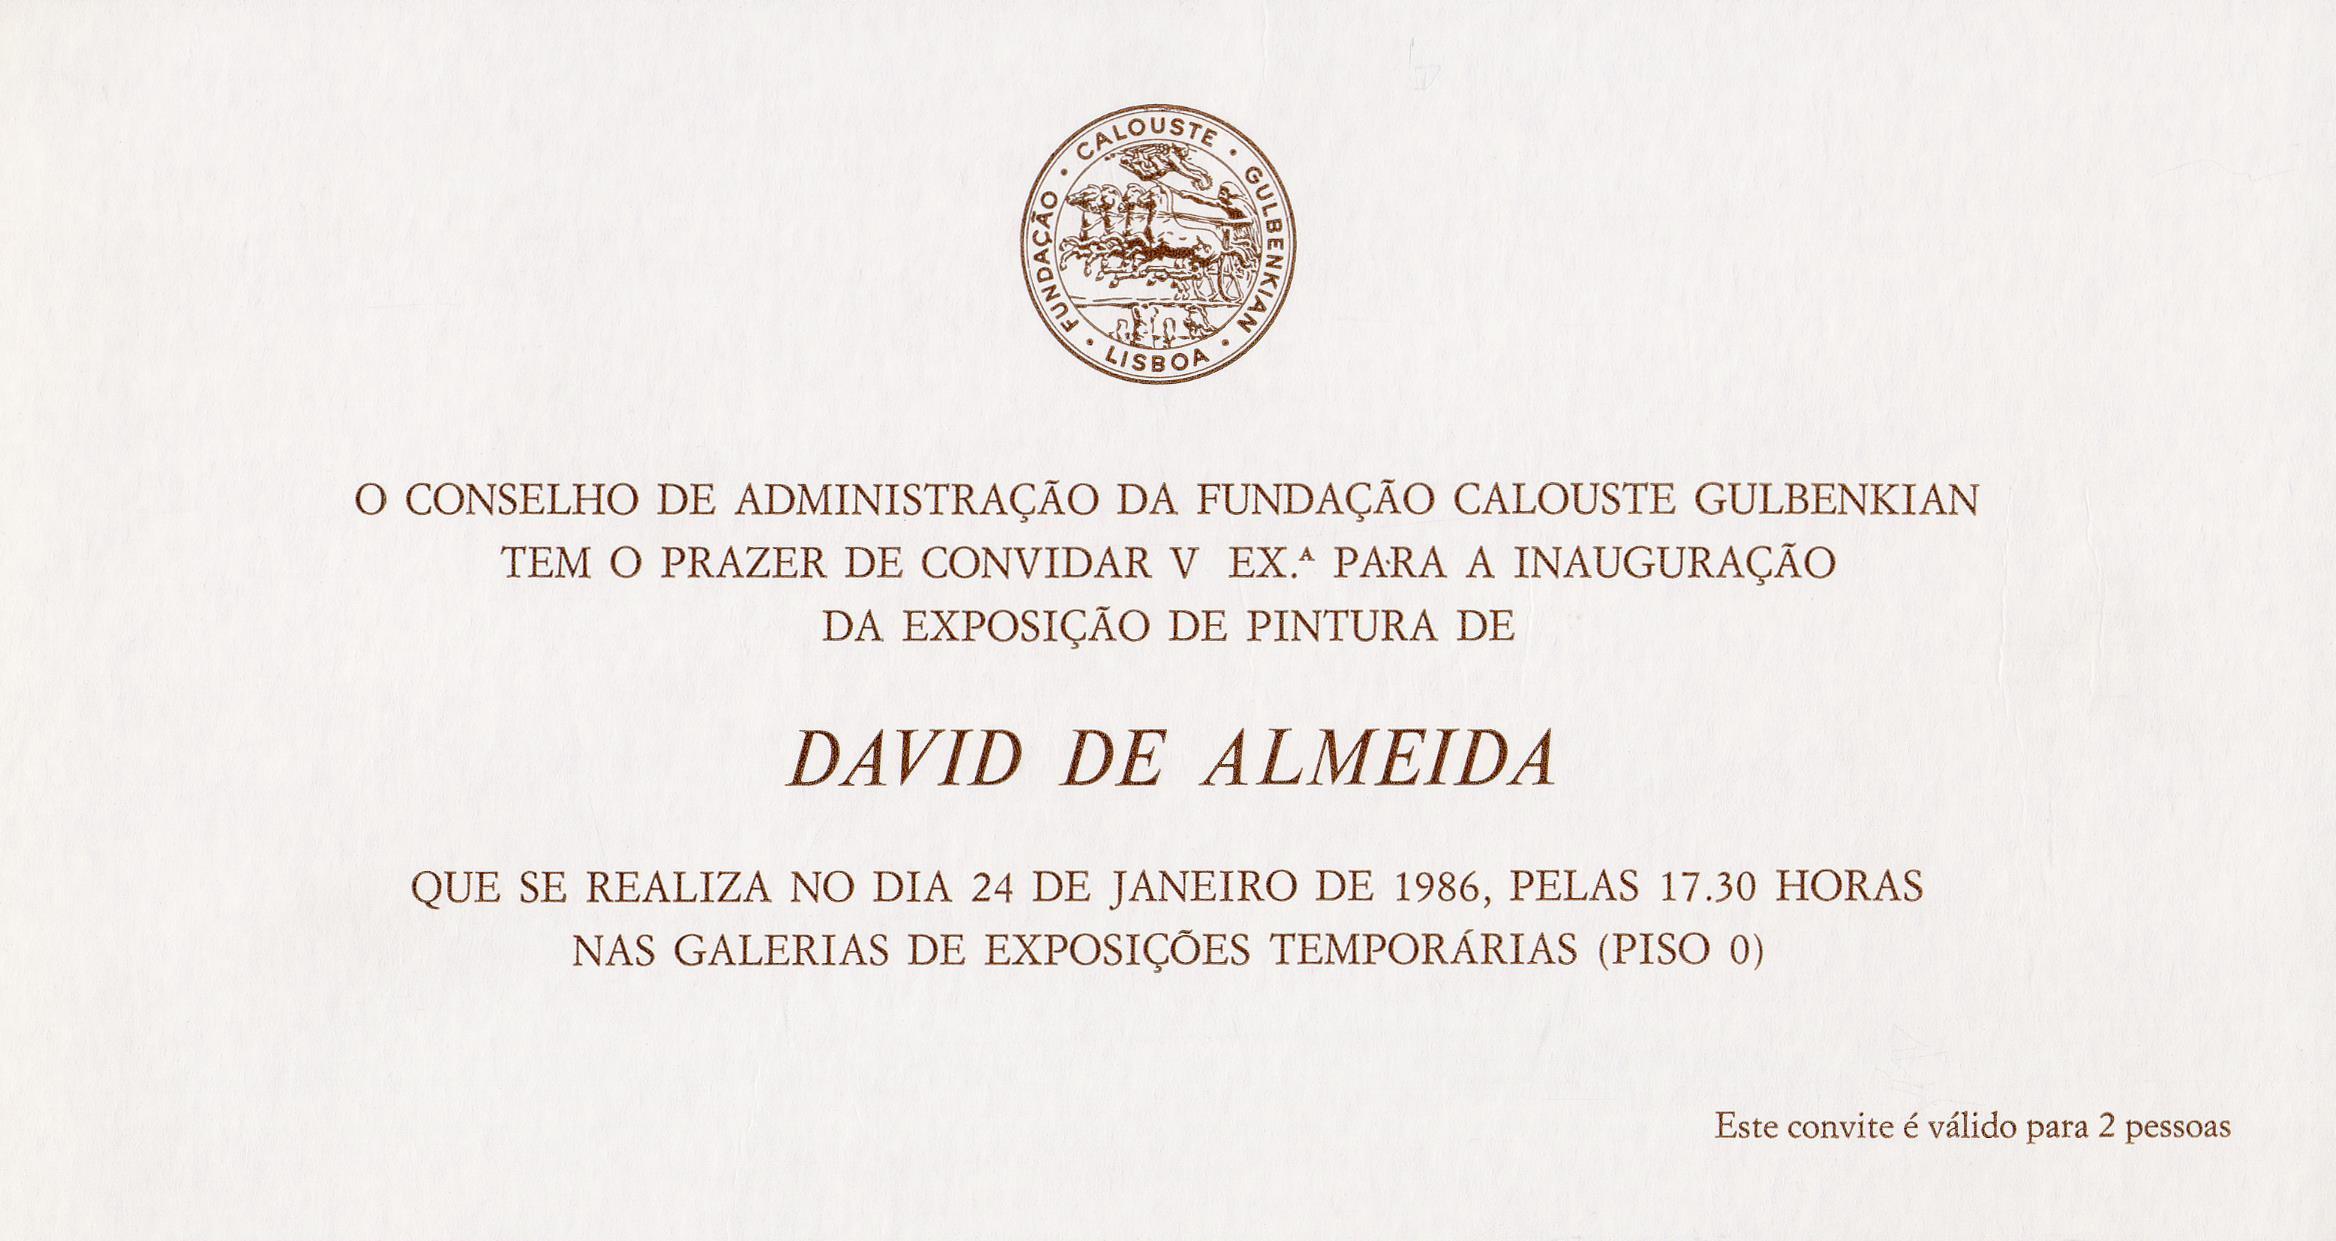 David de Almeida